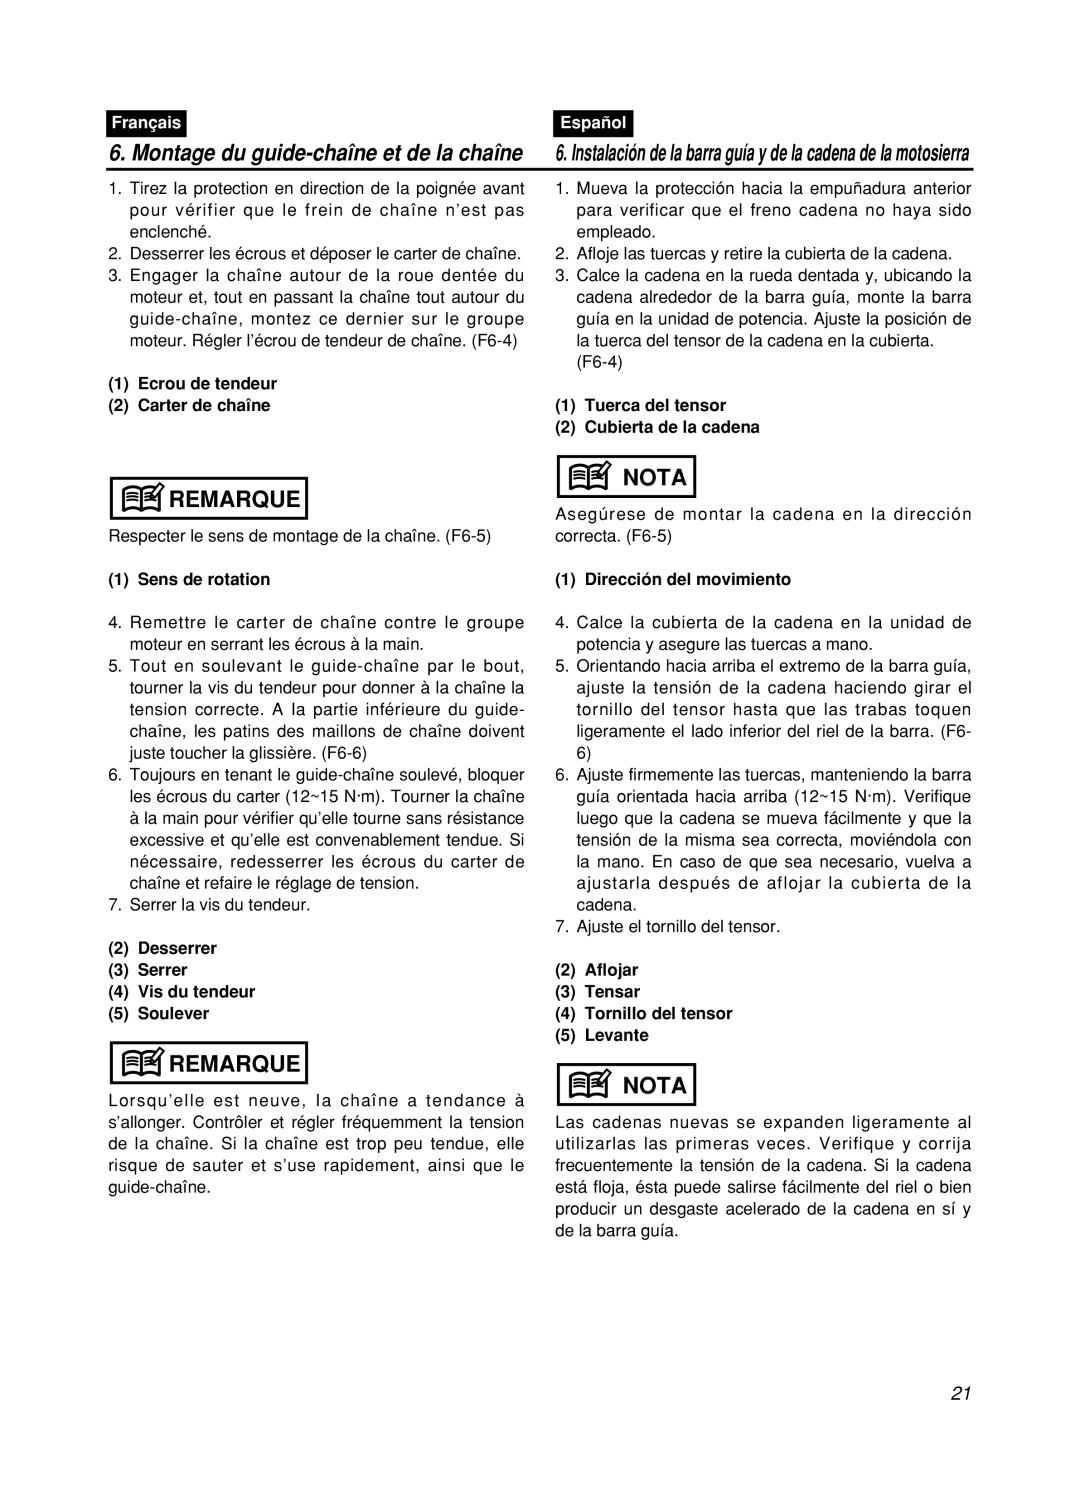 Zenoah GZ400 manual Remarque, Nota, Montage du guide-chaîne et de la chaîne, Français, Español 